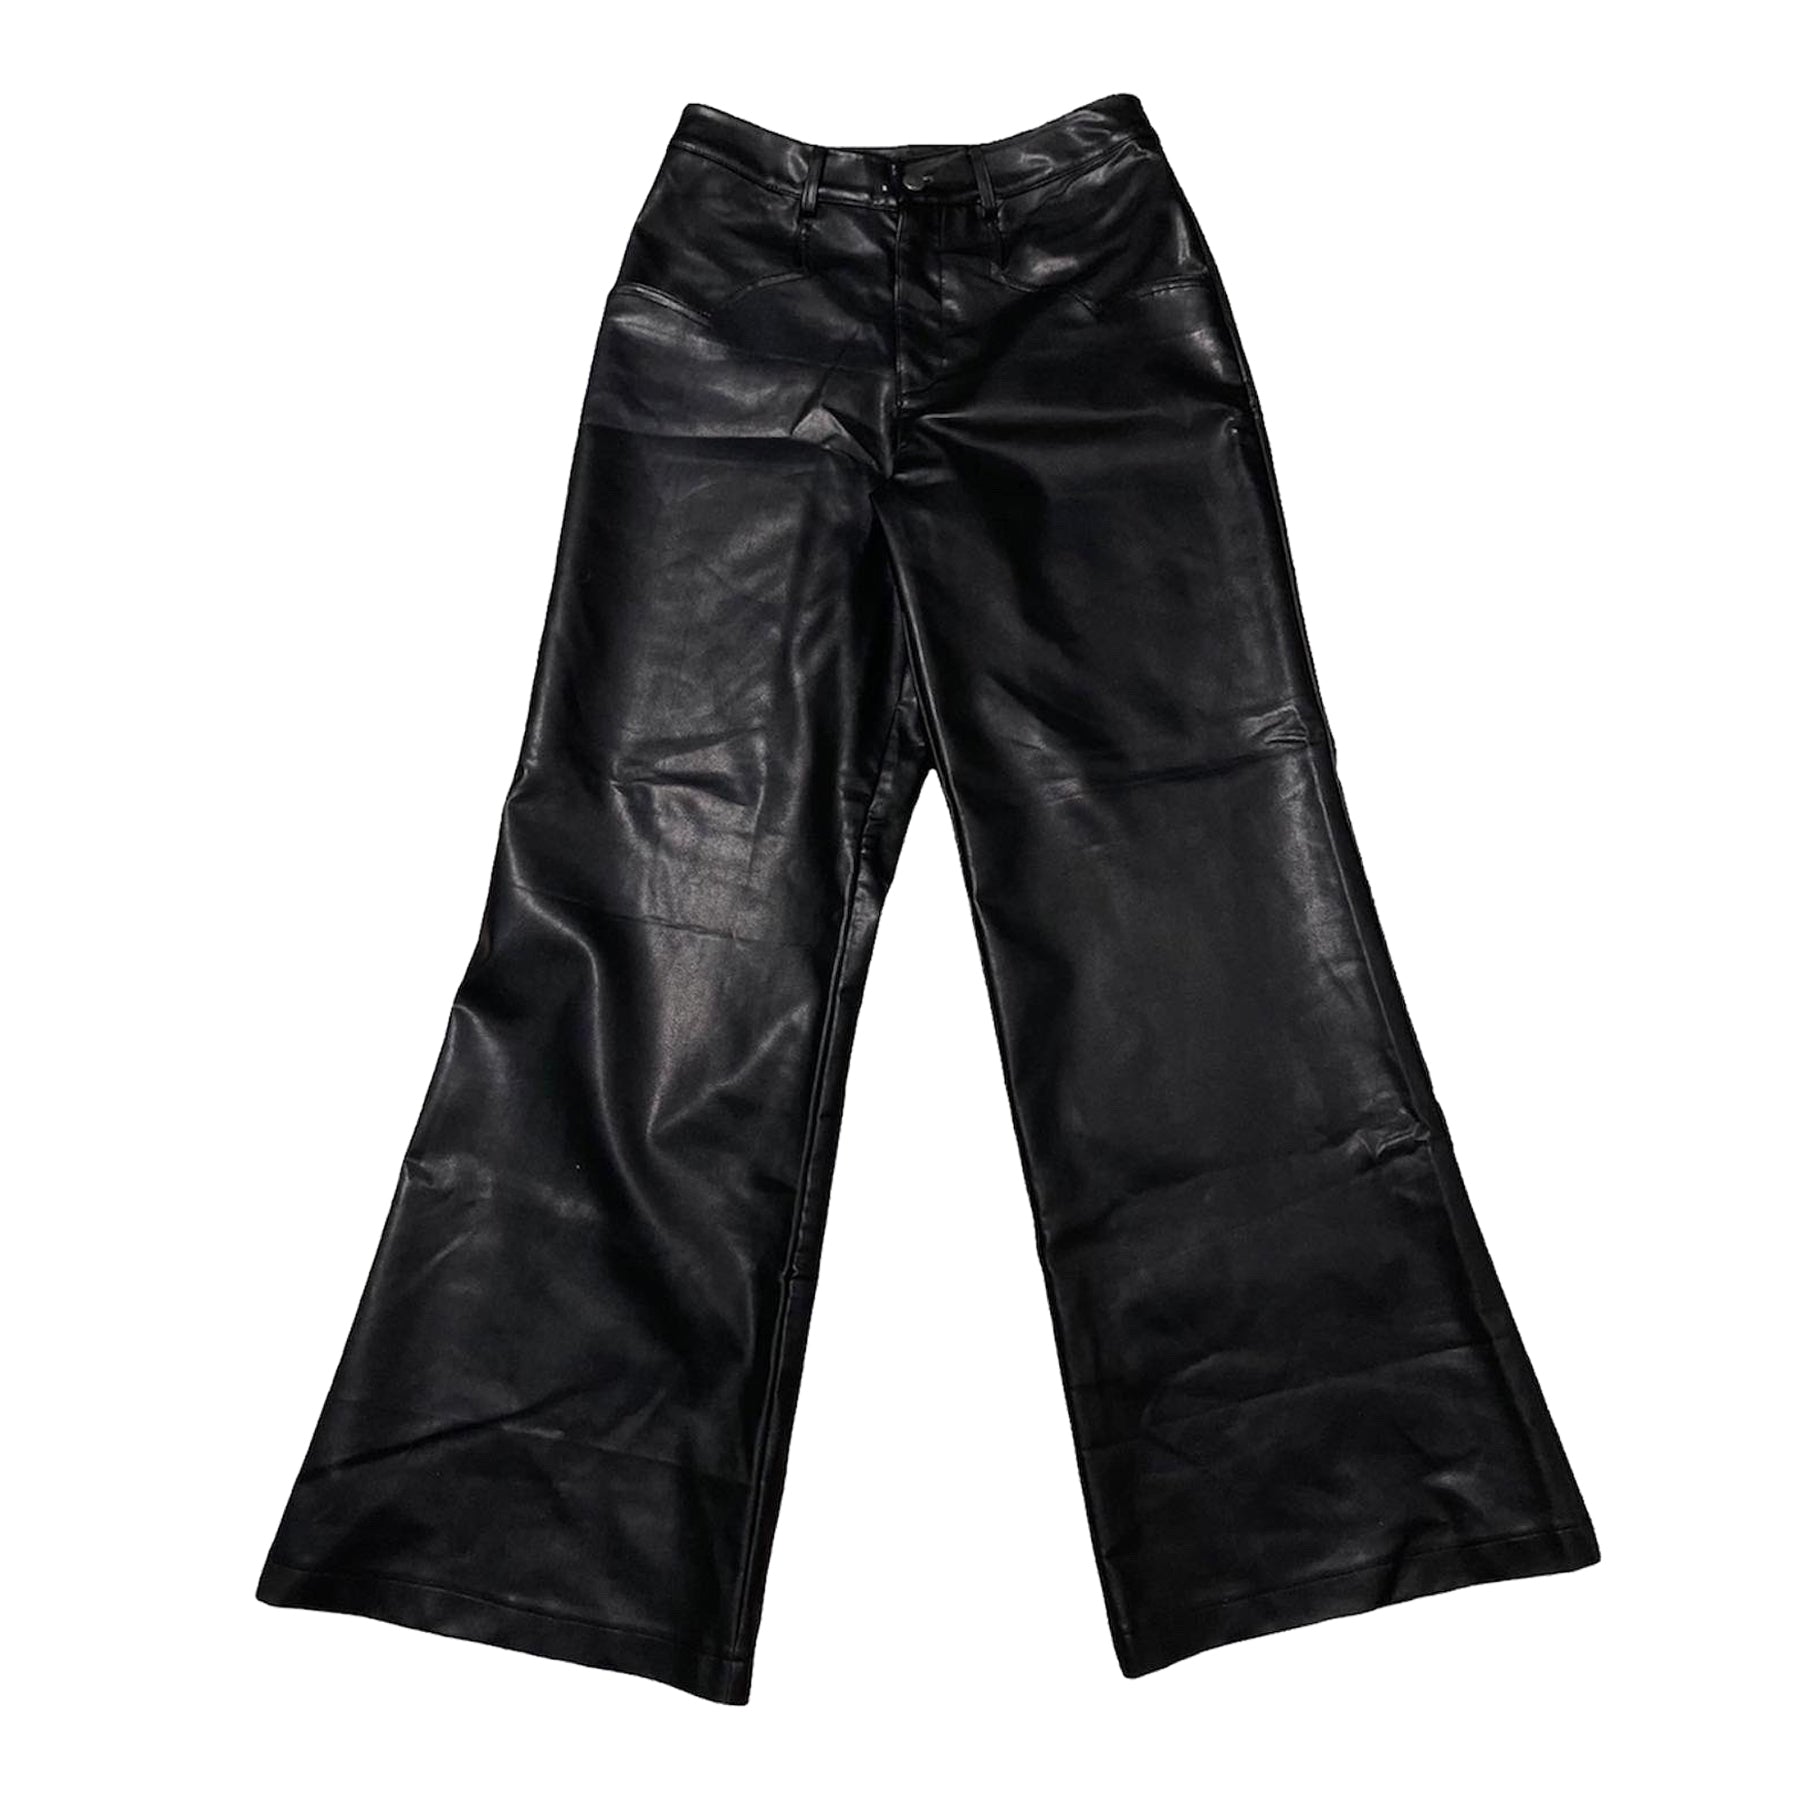 Black Leather Flared Pants V2